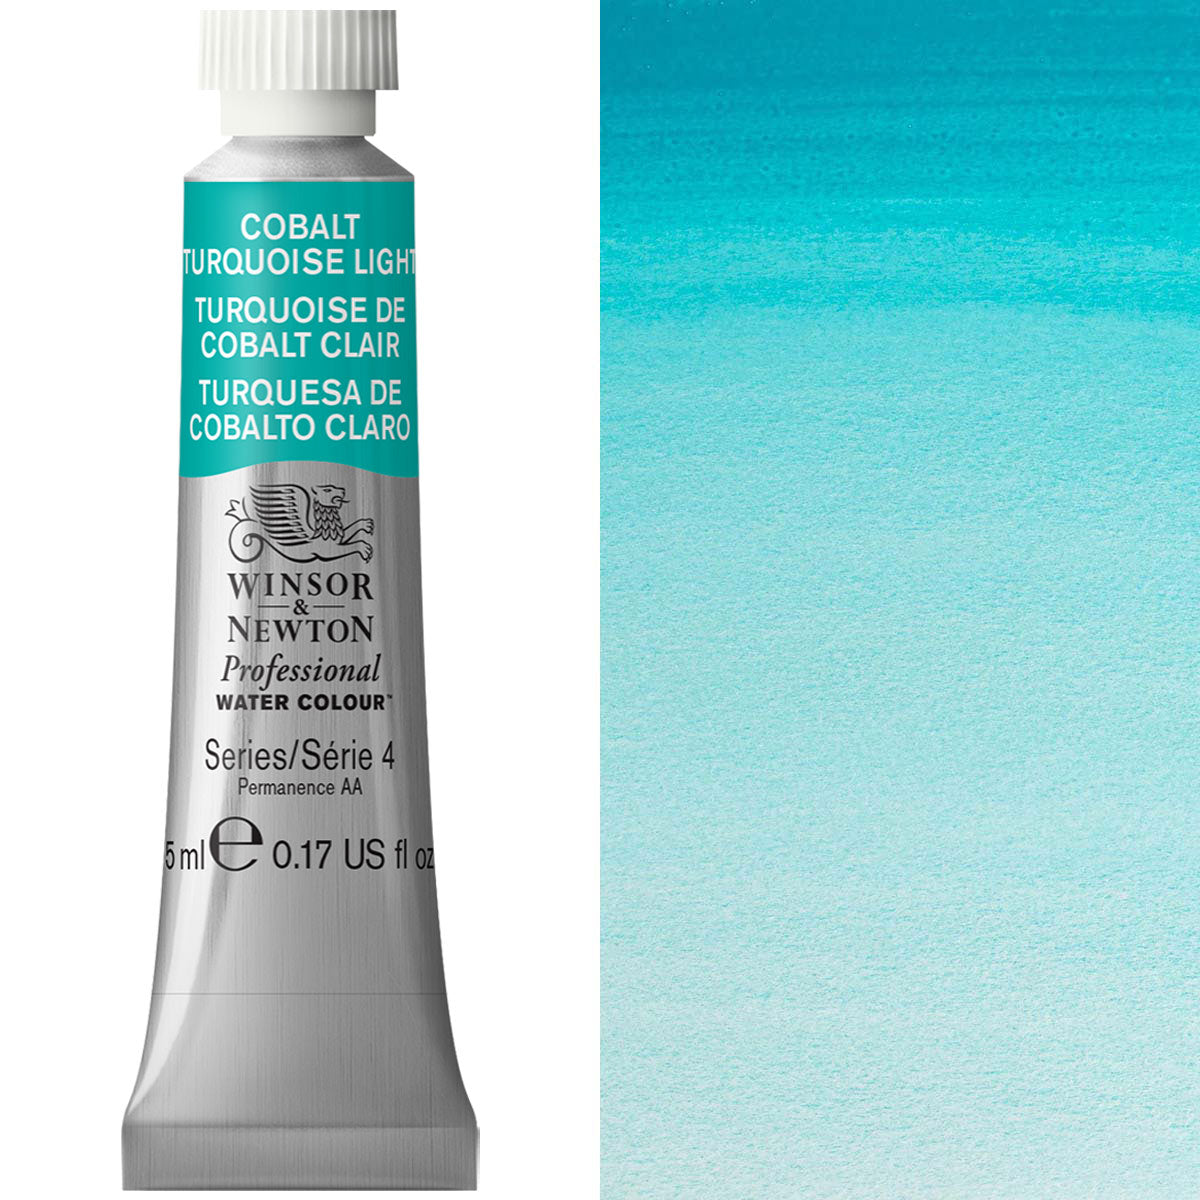 Winsor e Newton - Watercolor degli artisti professionisti - 5ml - COBALT Turquoise Light